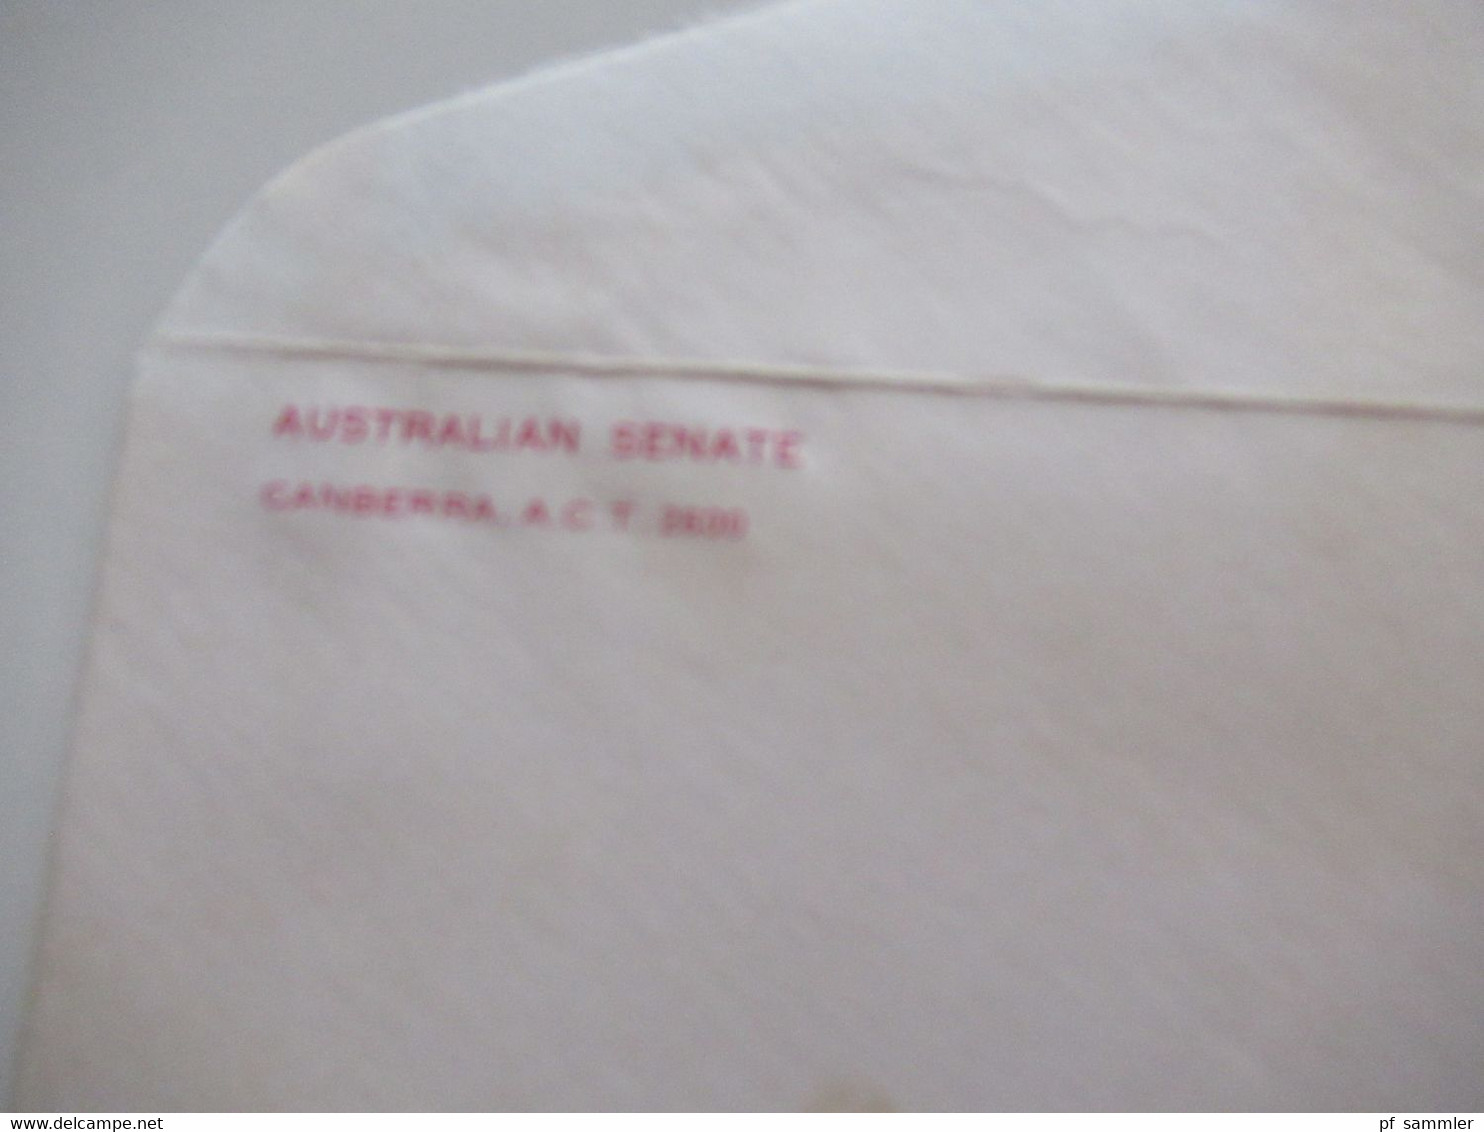 1980 Umschlag Australian Senate (Regierung) Mit Inhalt U. Original Unterschrift K.O. Bradshaw Acting Clerk Of The Senate - Covers & Documents